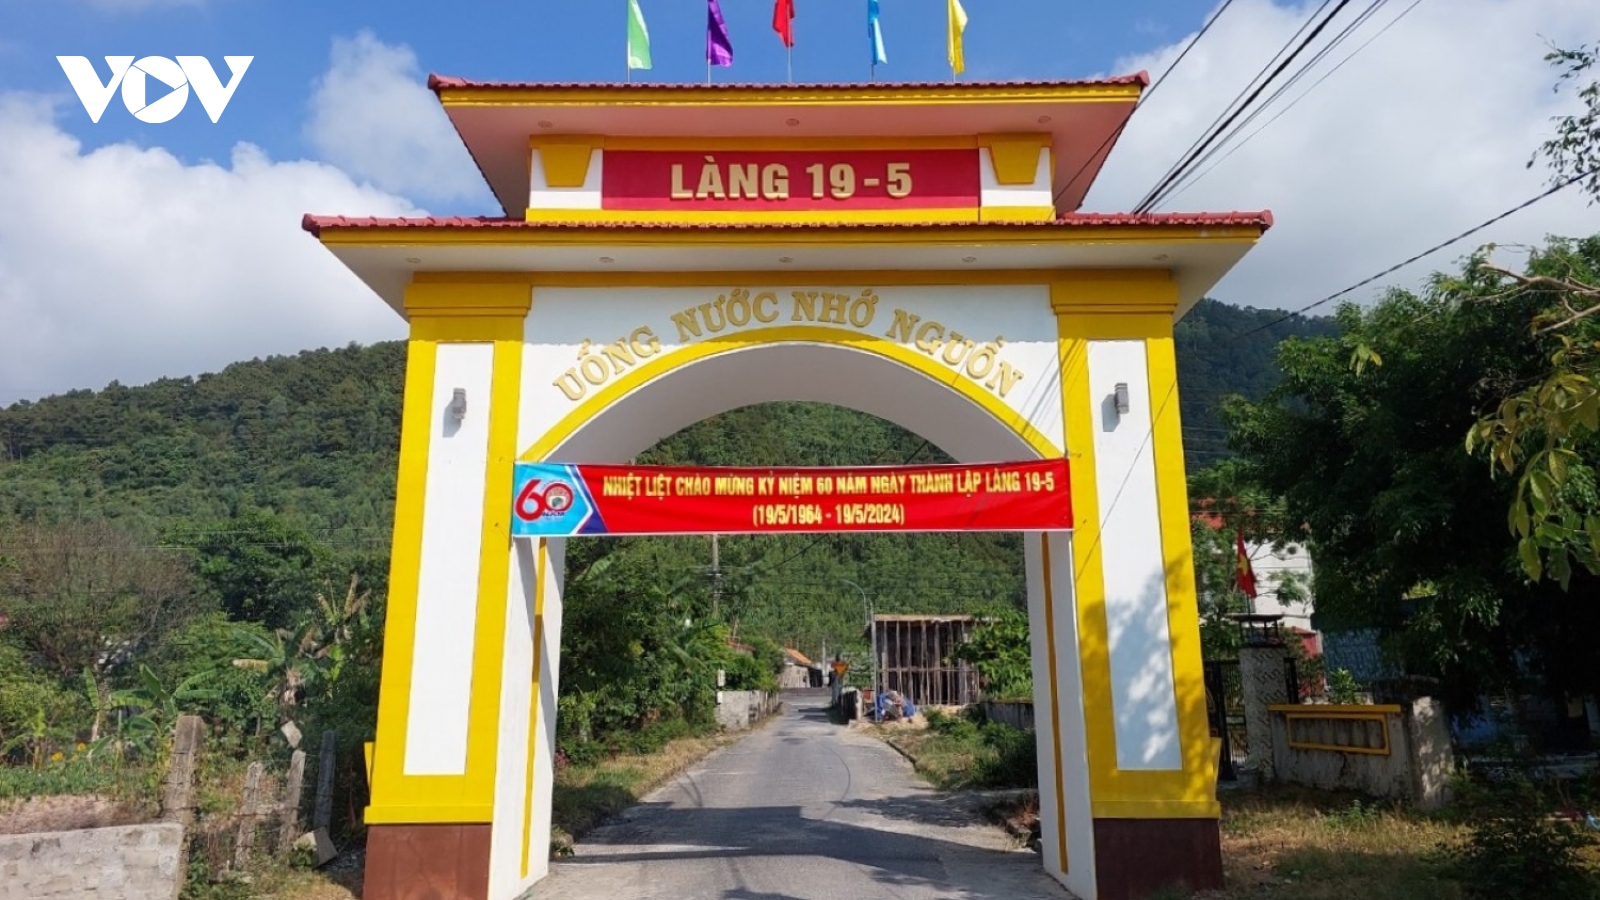 60 năm ngôi làng dưới chân đèo Ngang mang tên "Làng 19-5"